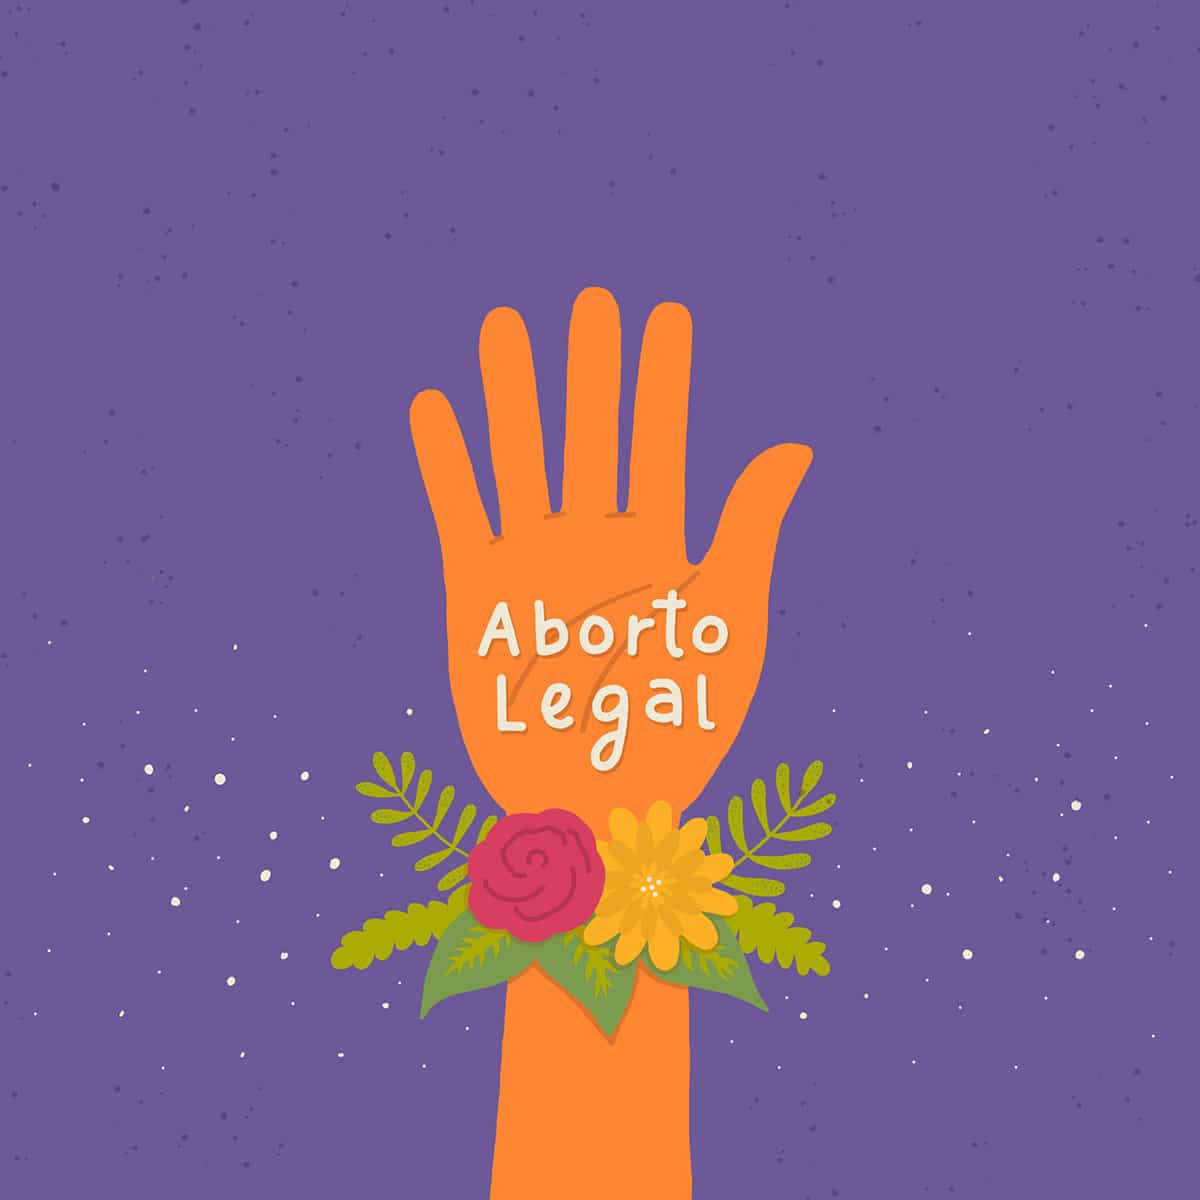 Mano naranja como la campaña por el aborto legal, con las palabras "Aborto Legal" escritas y flores en la muñeca.